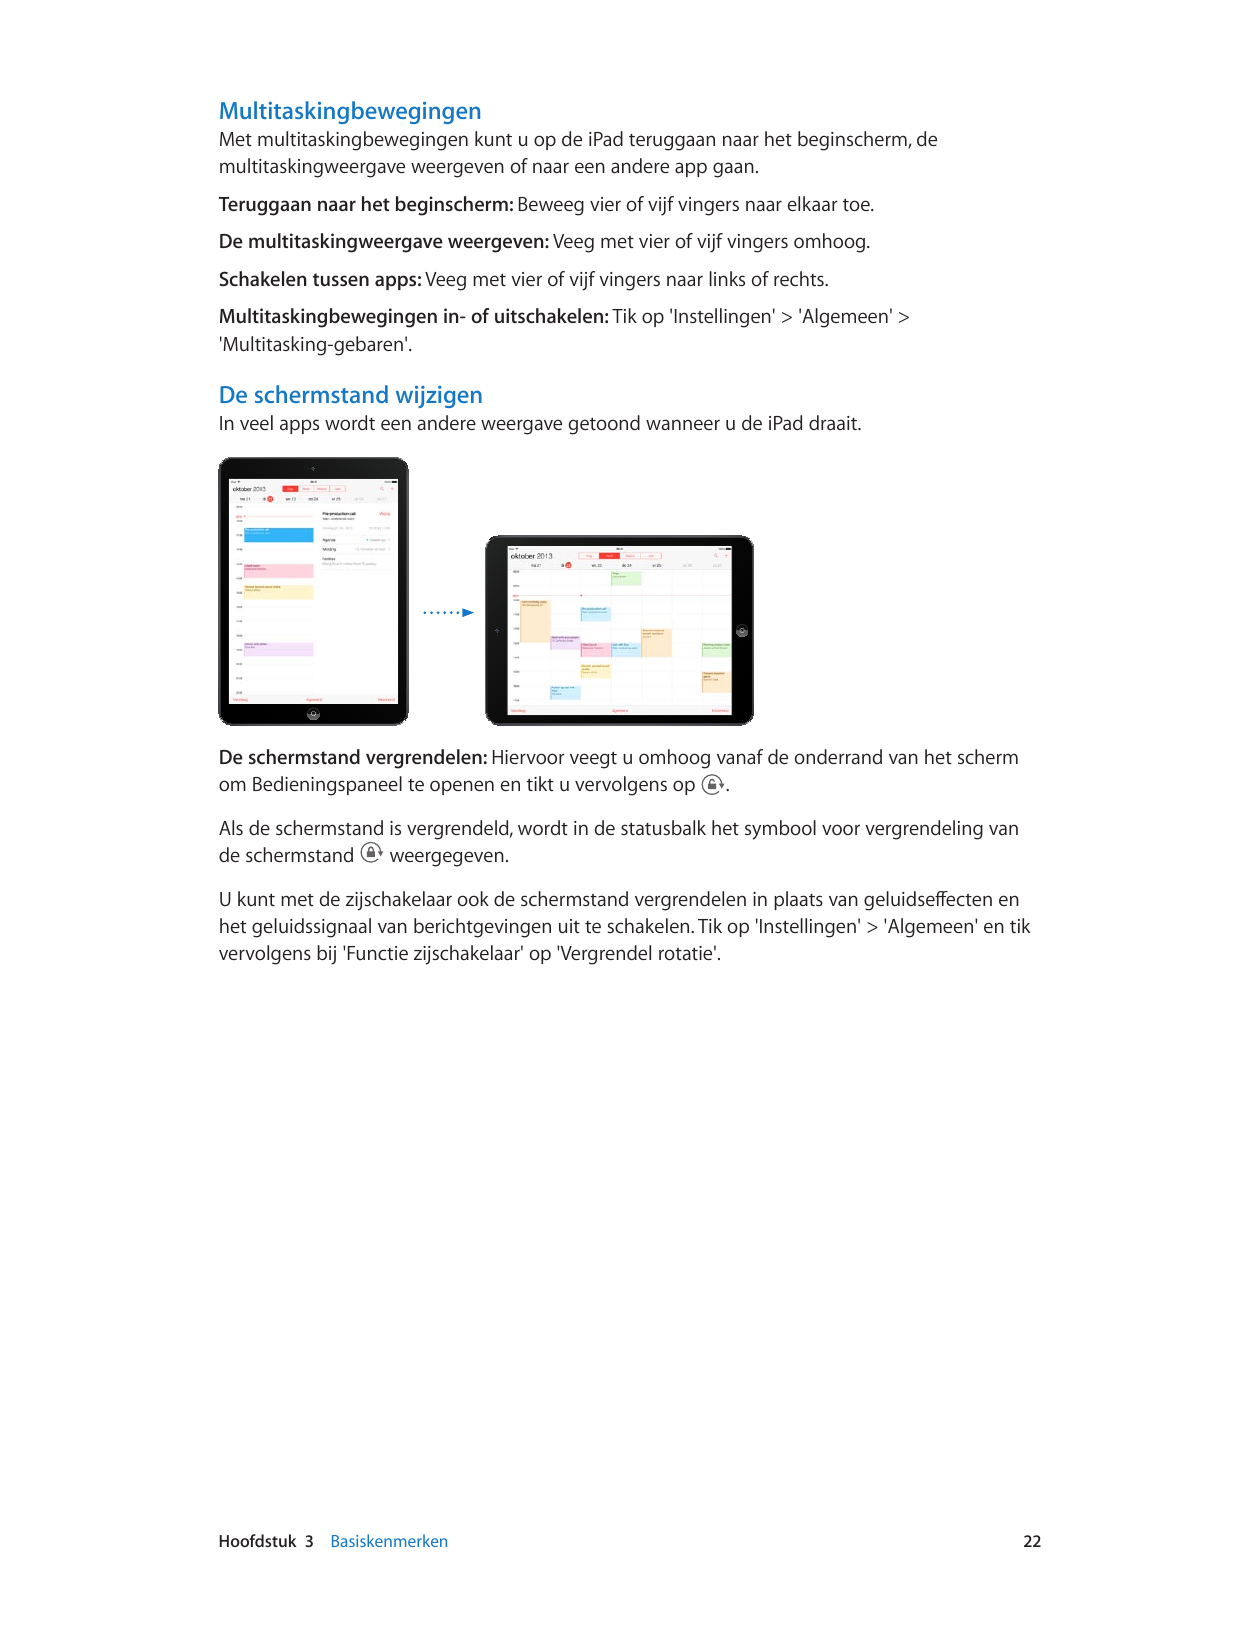 MultitaskingbewegingenMet multitaskingbewegingen kunt u op de iPad teruggaan naar het beginscherm, demultitaskingweergave weerge